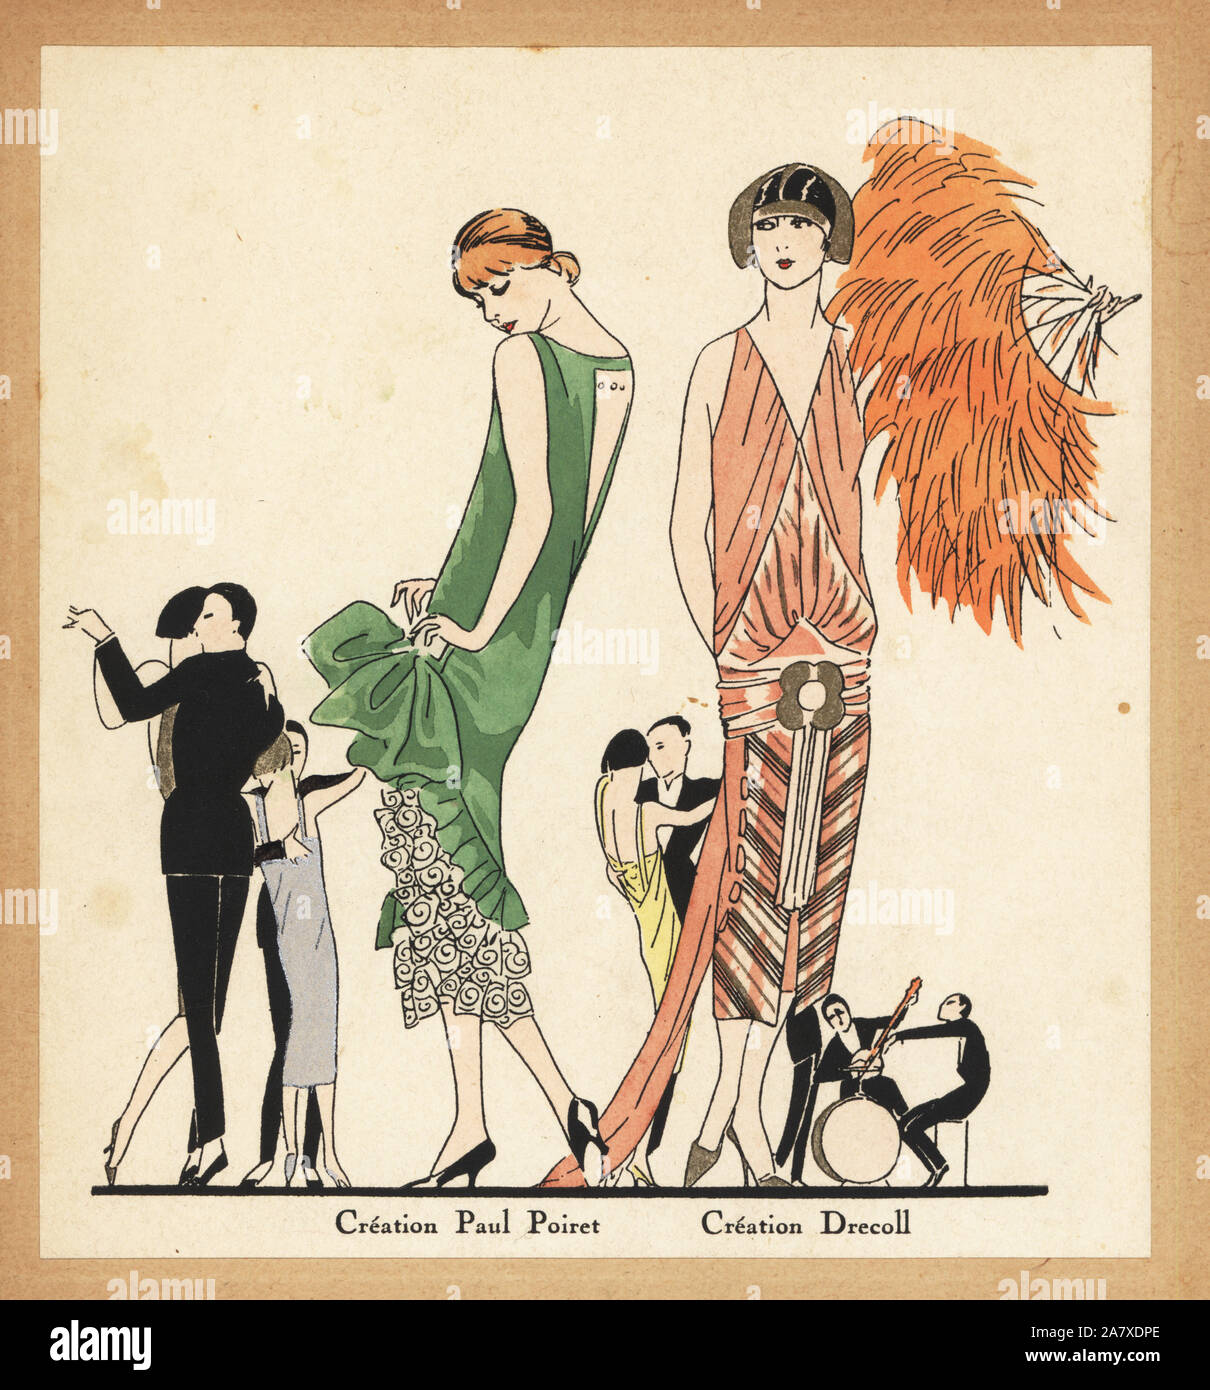 Frauen in Abend Kleider mit Rüschen und Zügen, in einer Jazz Dance, Paris 1925. Papierkörbe pochoir (Schablone) Lithographie von der Französischen luxus Mode Magazin Kunst, Gicht, Beauté, 1927. Stockfoto